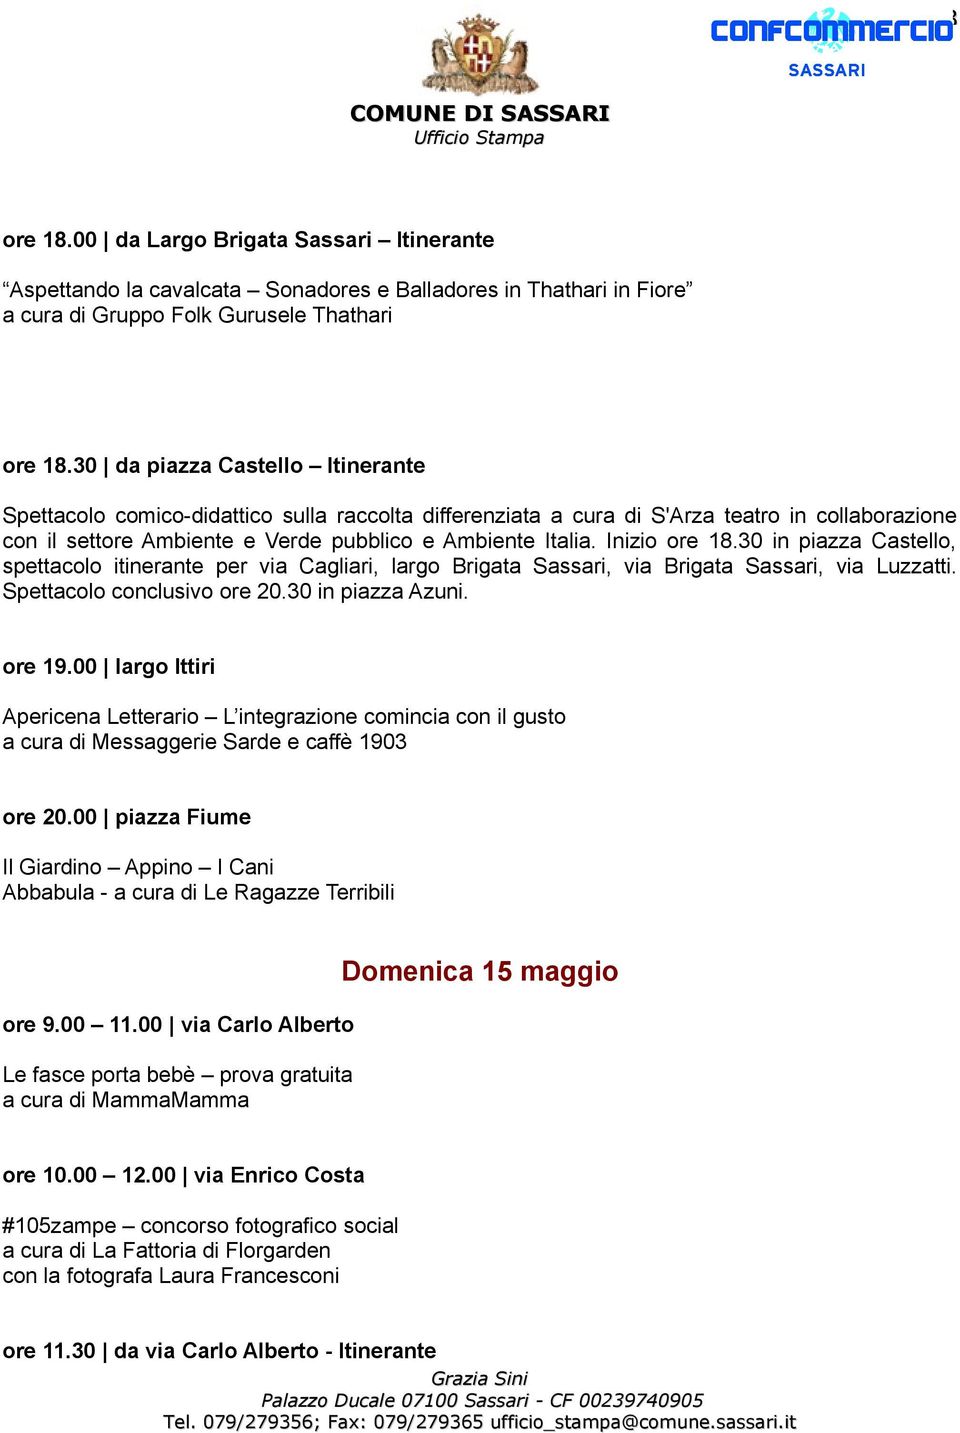 Inizio ore 18.30 in piazza Castello, spettacolo itinerante per via Cagliari, largo Brigata Sassari, via Brigata Sassari, via Luzzatti. Spettacolo conclusivo ore 20.30 in piazza Azuni. ore 19.